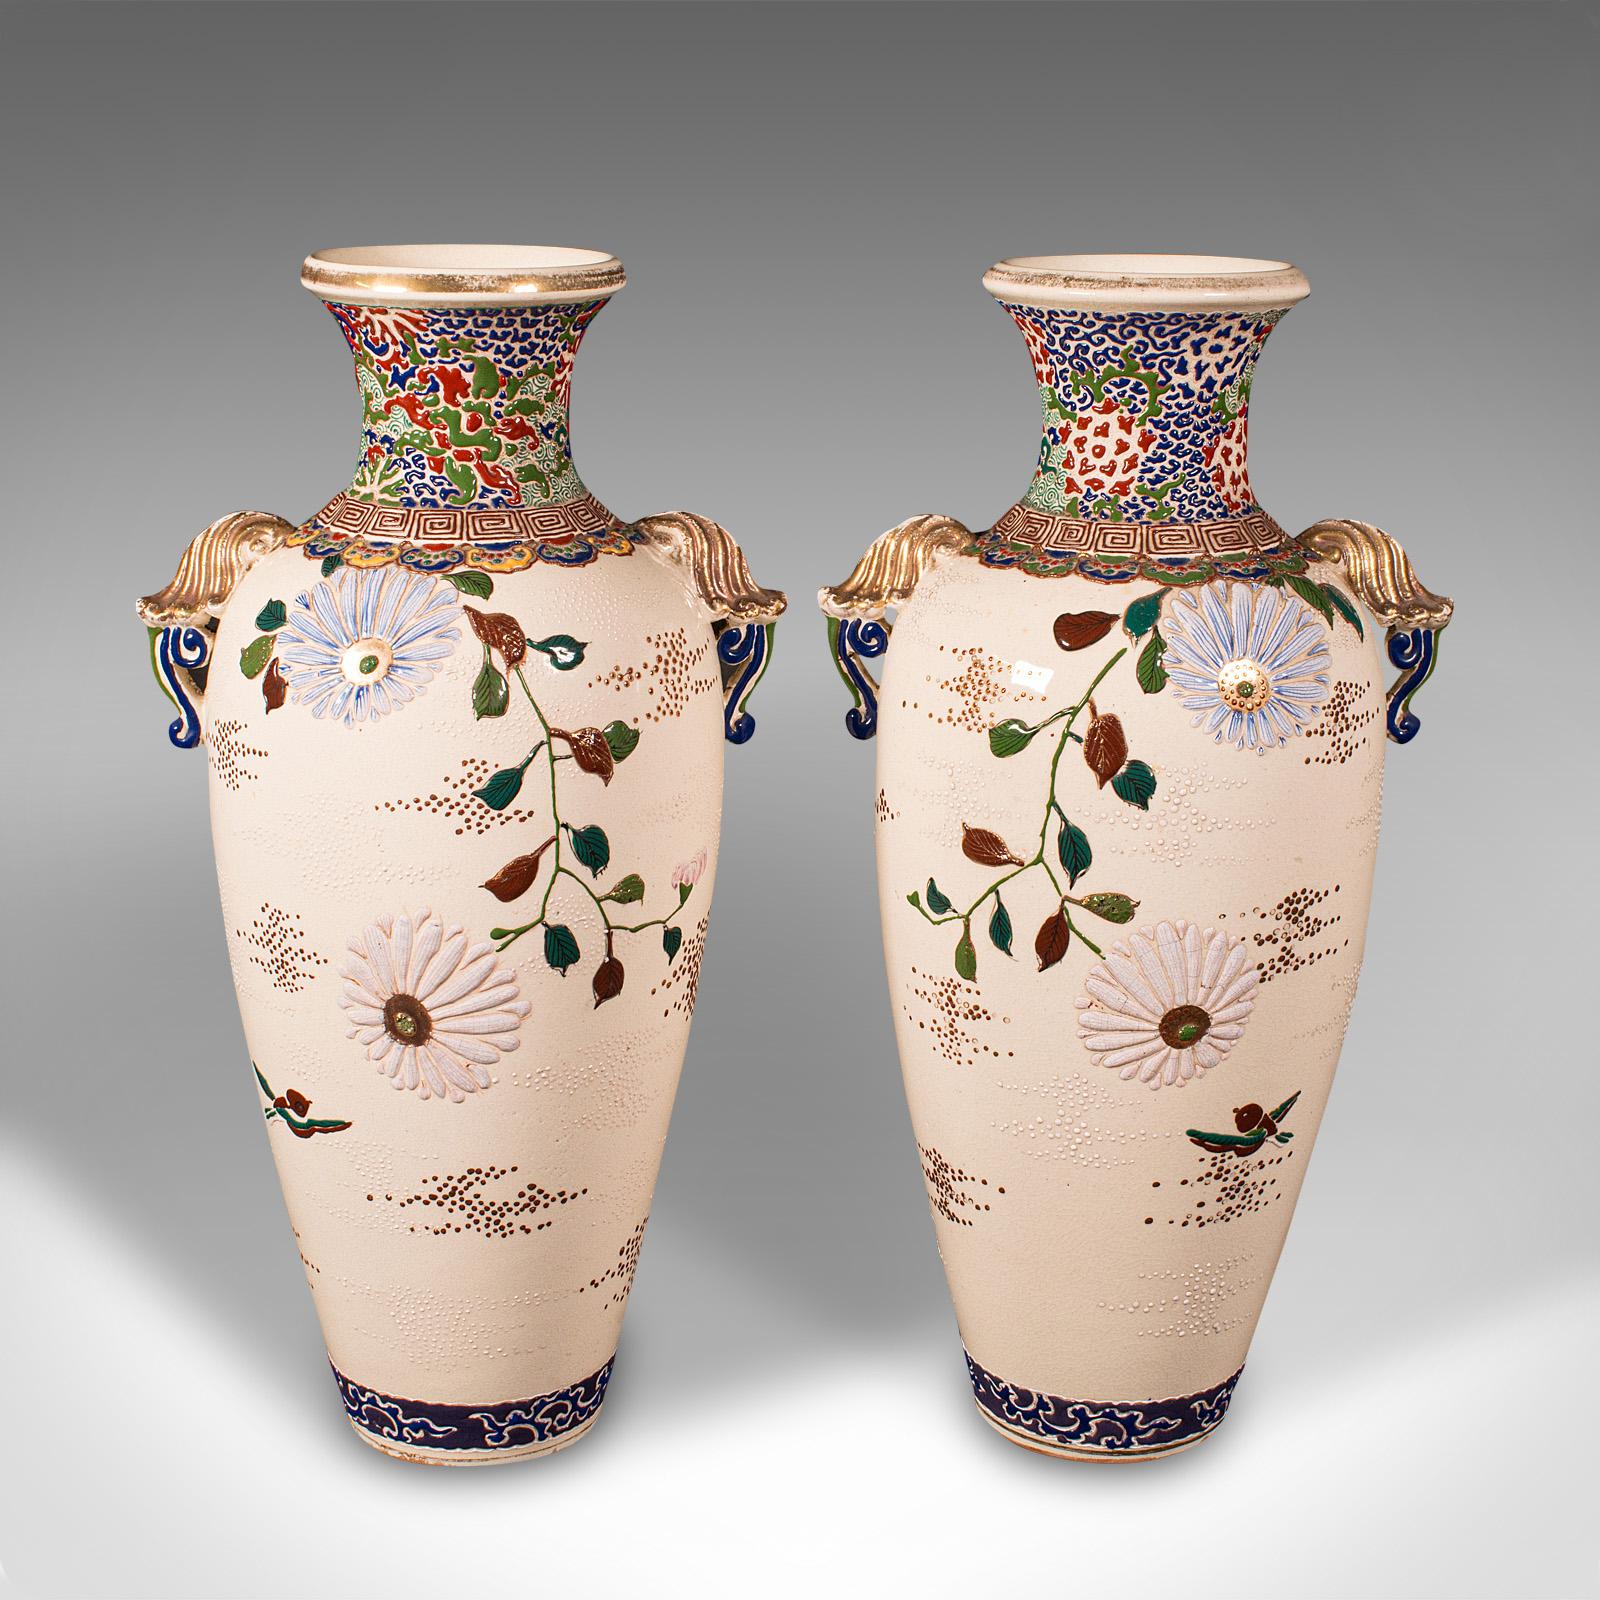 Il s'agit d'une grande paire de vases Satsuma vintage. Urne à fleurs japonaise en céramique de style Art déco oriental, datant du milieu du XXe siècle, vers 1940.

Exemples de céramiques japonaises classiquement décoratives
Patine d'ancienneté